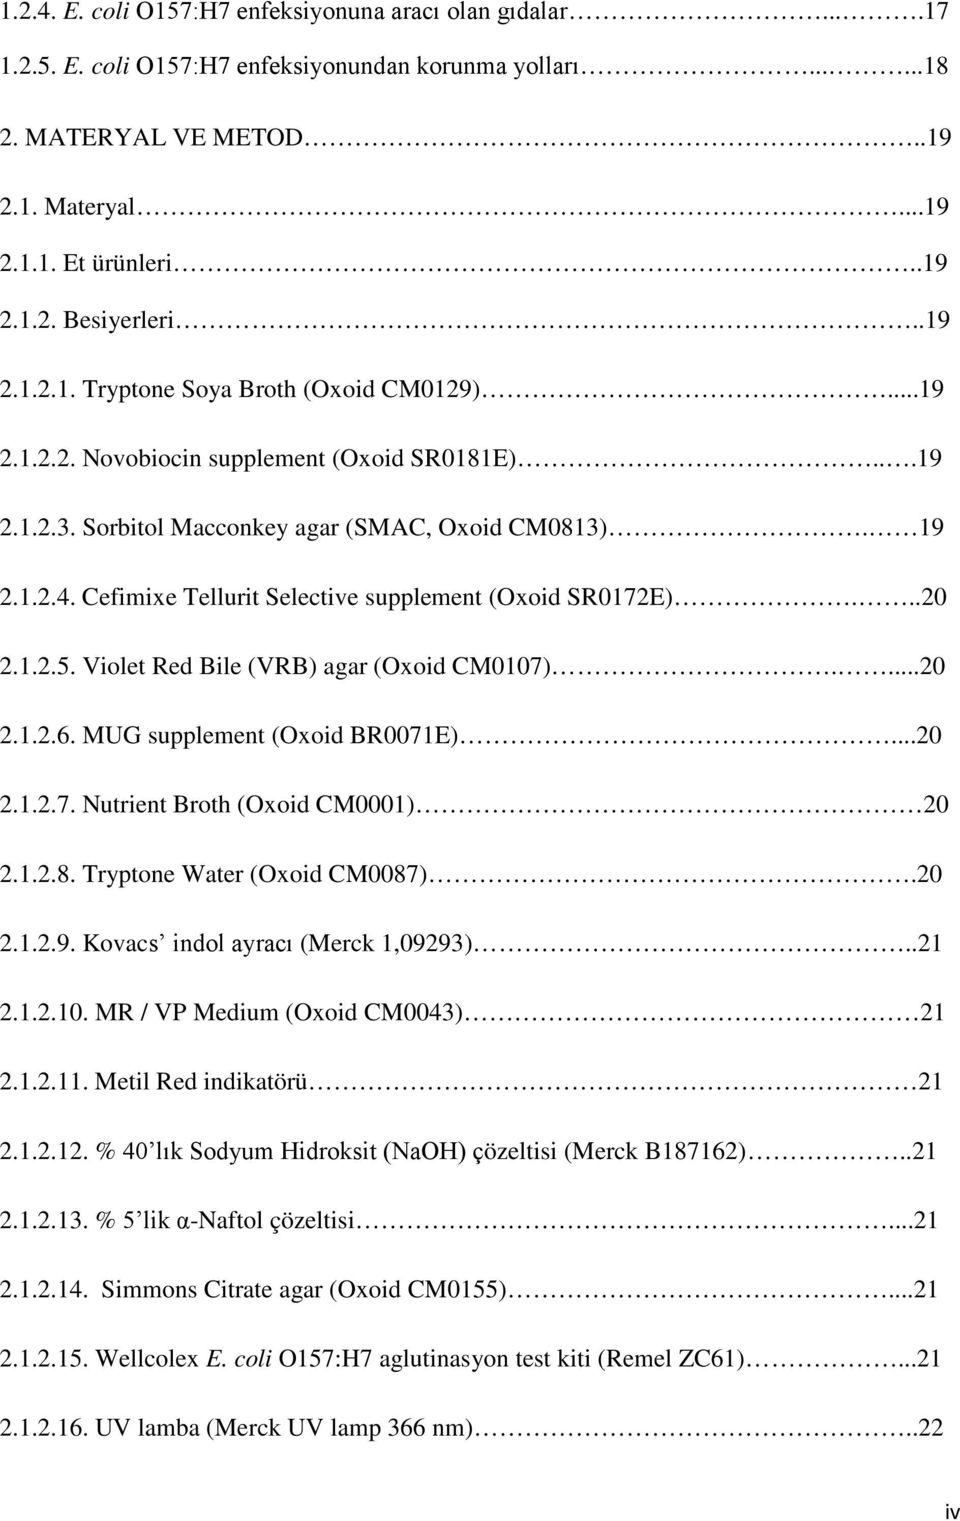 Cefimixe Tellurit Selective supplement (Oxoid SR0172E)...20 2.1.2.5. Violet Red Bile (VRB) agar (Oxoid CM0107)....20 2.1.2.6. MUG supplement (Oxoid BR0071E)...20 2.1.2.7. Nutrient Broth (Oxoid CM0001) 20 2.